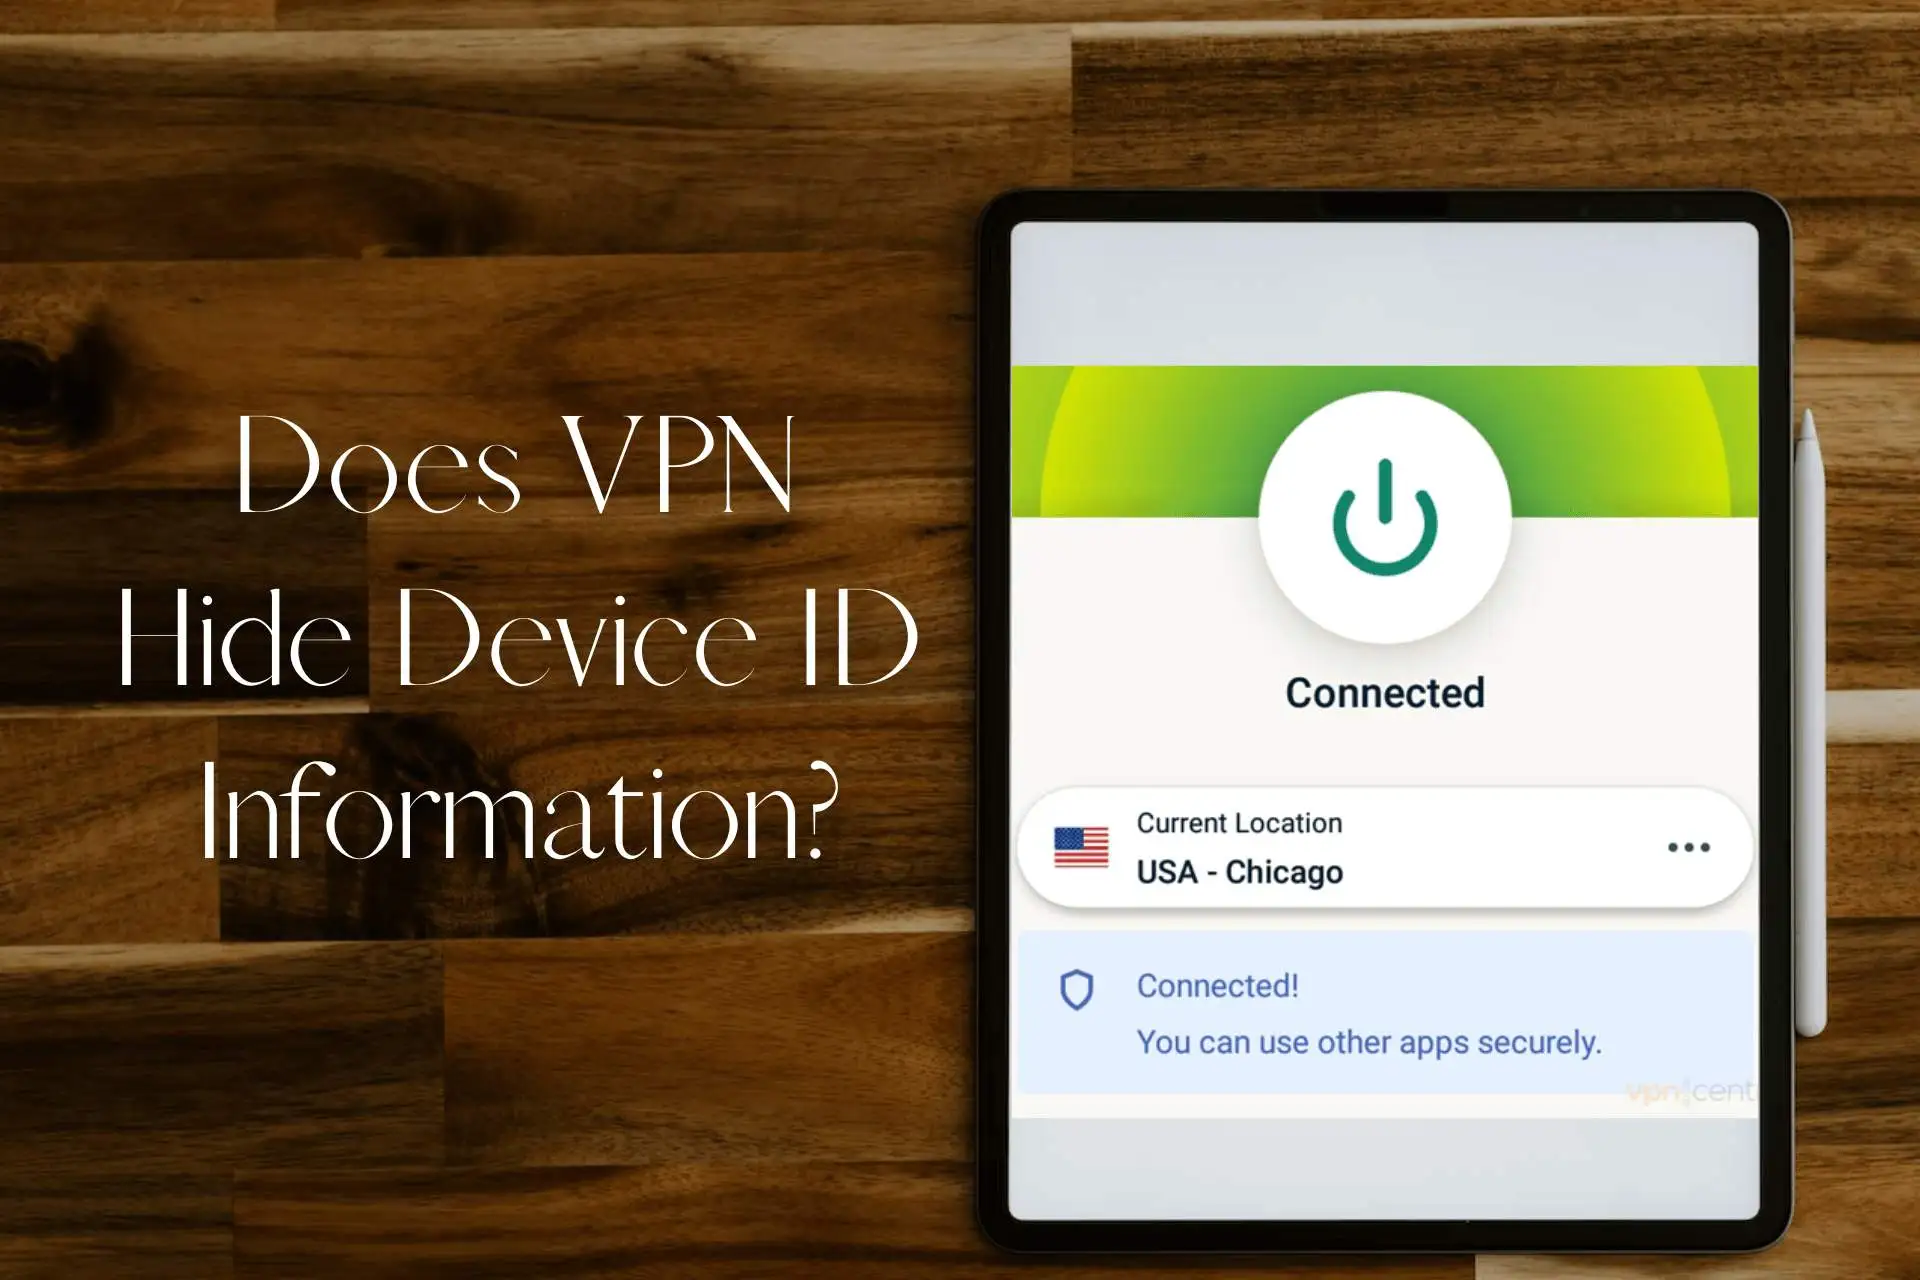 Does VPN hide device ID